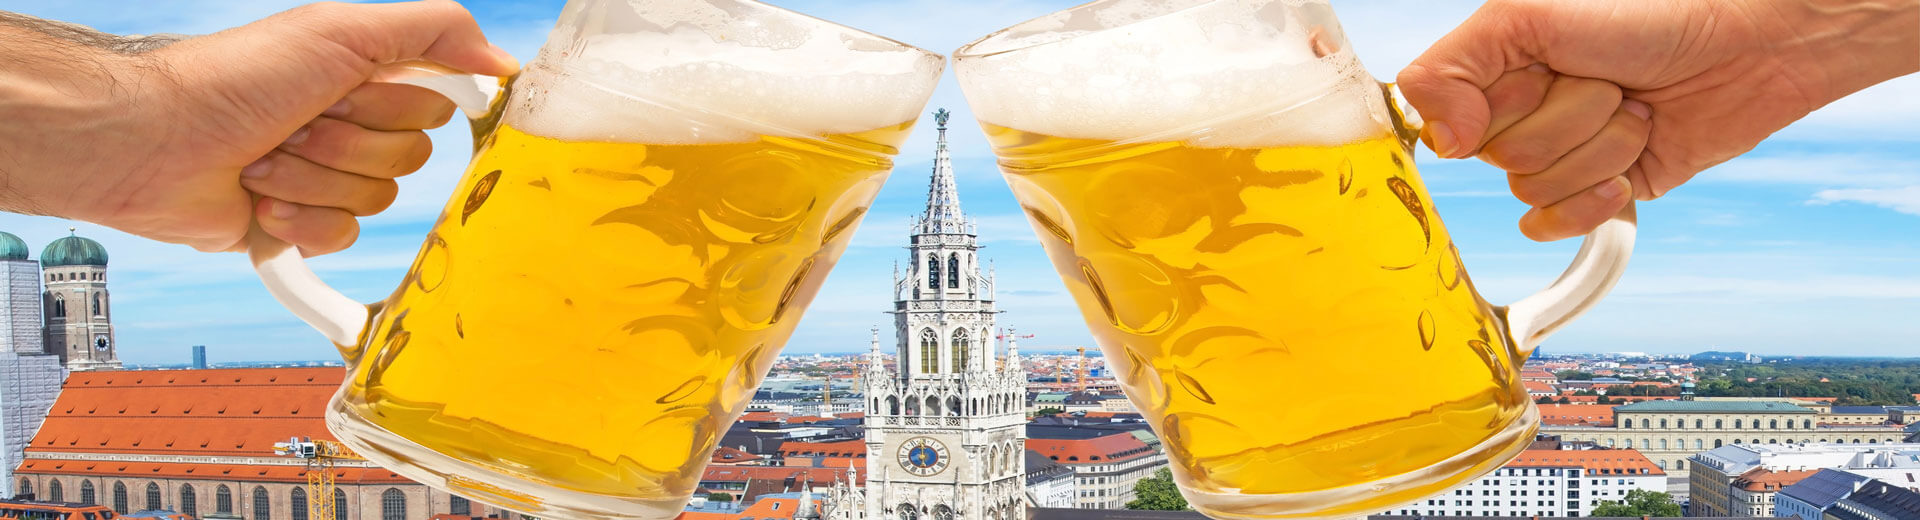 7 דברים שאתם חייבים לדעת על פסטיבל הבירה הגדול בעולם - אוקטוברפסט!